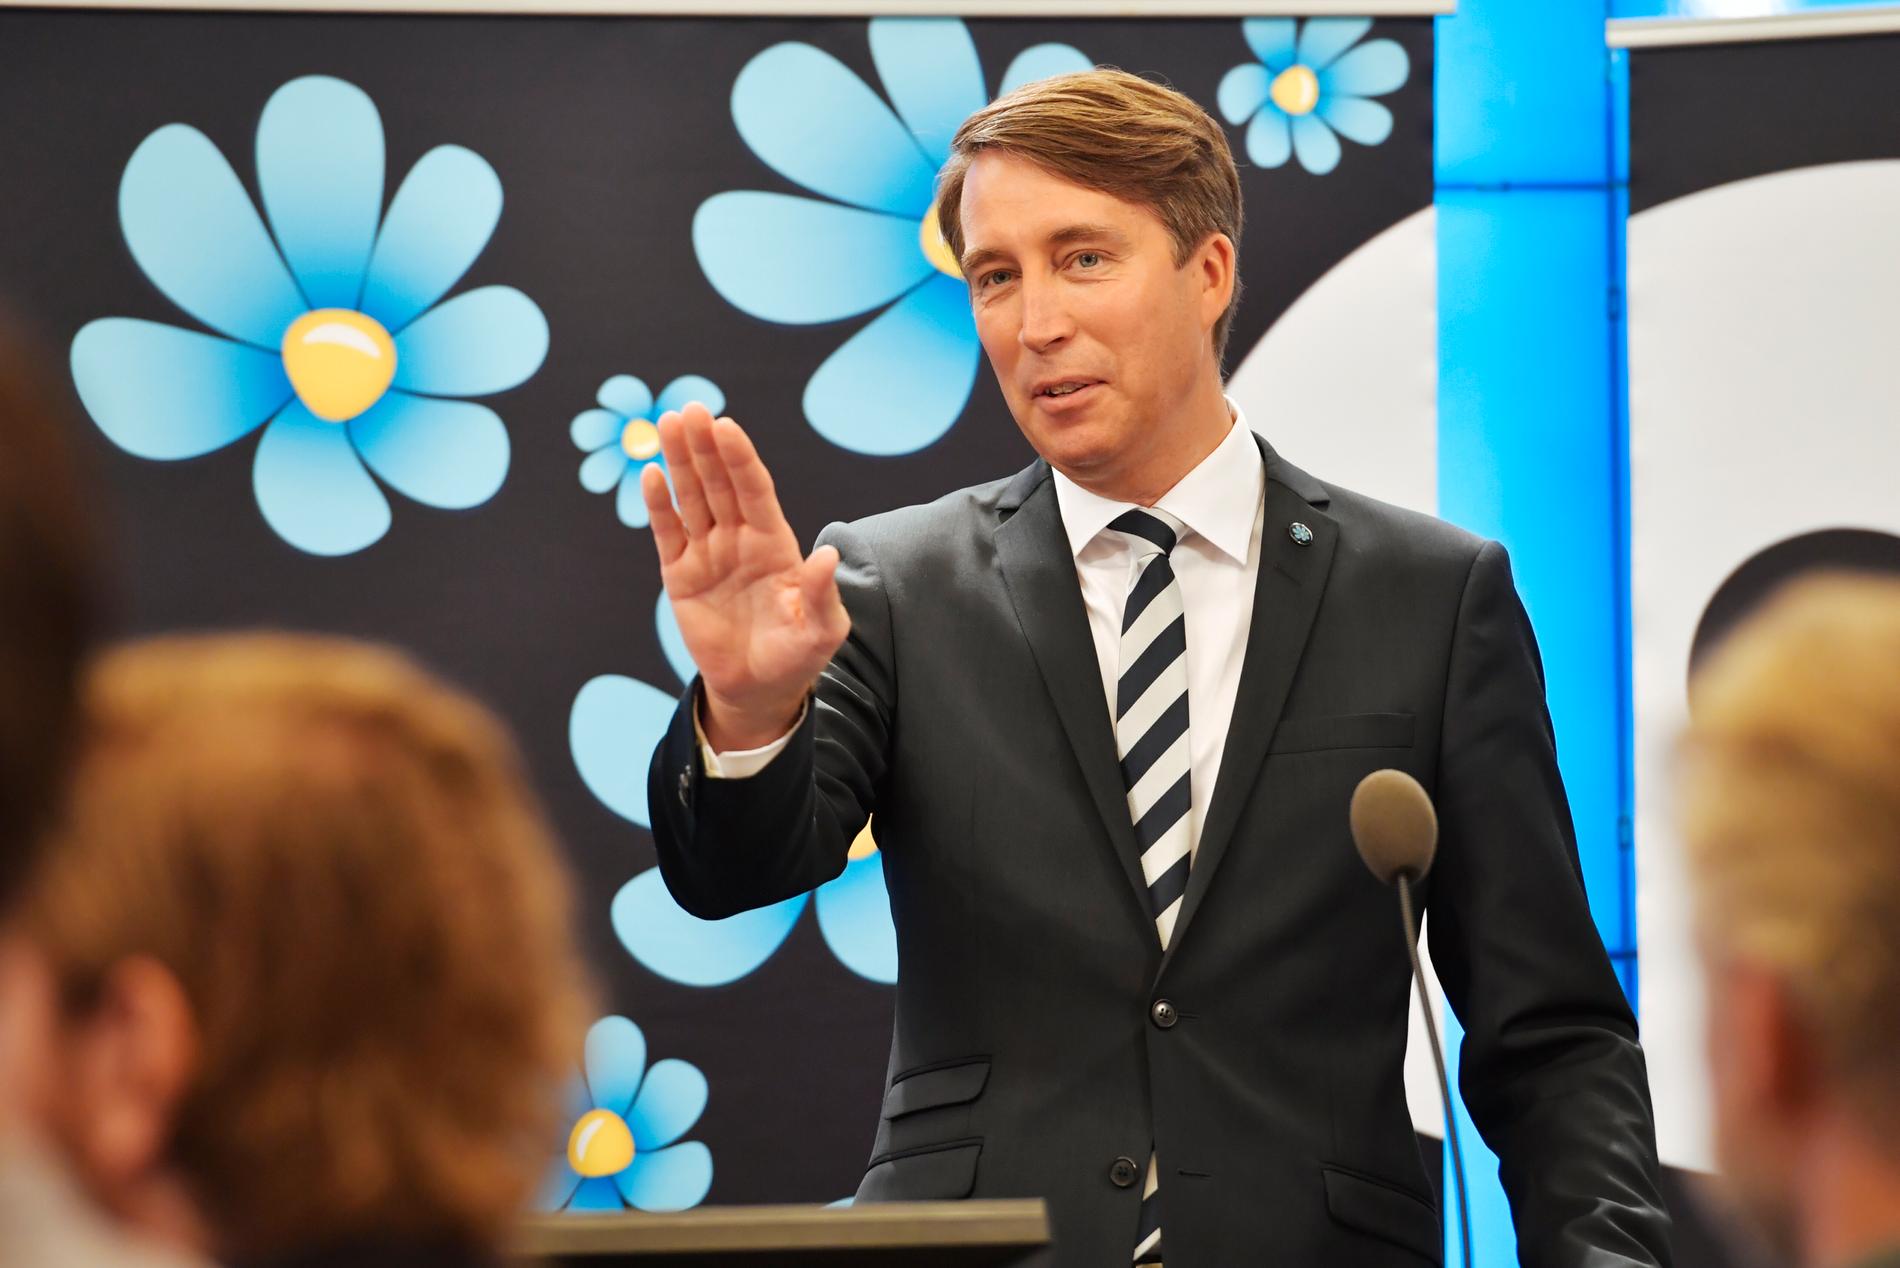 Sverigedemokraternas partisekreterare Richard Jomshof på pressträff om partiets kommunstrategi.